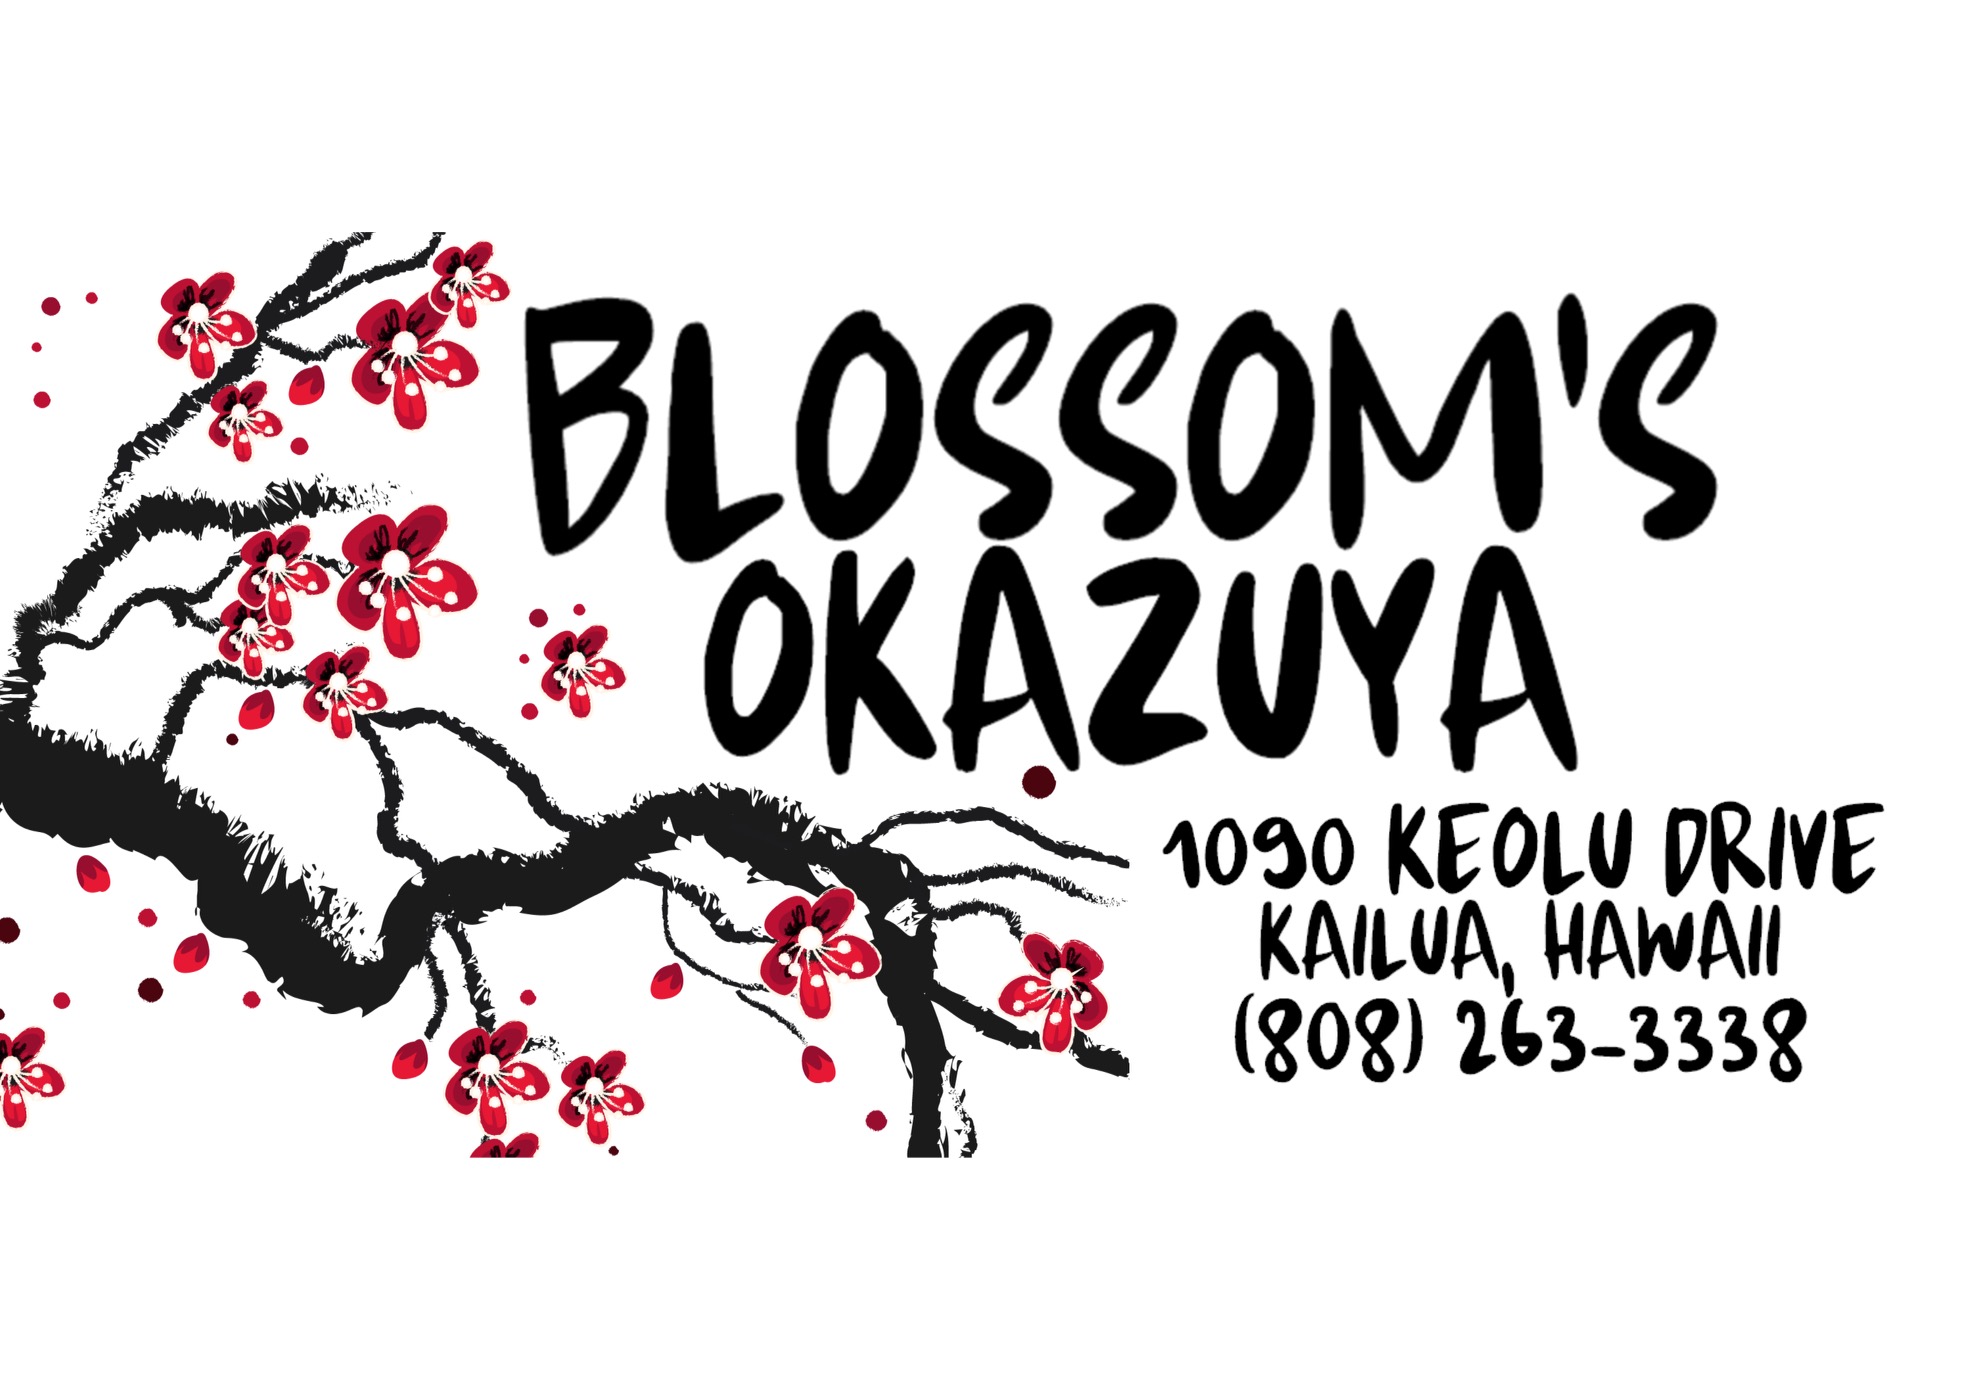 Blossom's Okazuya logo